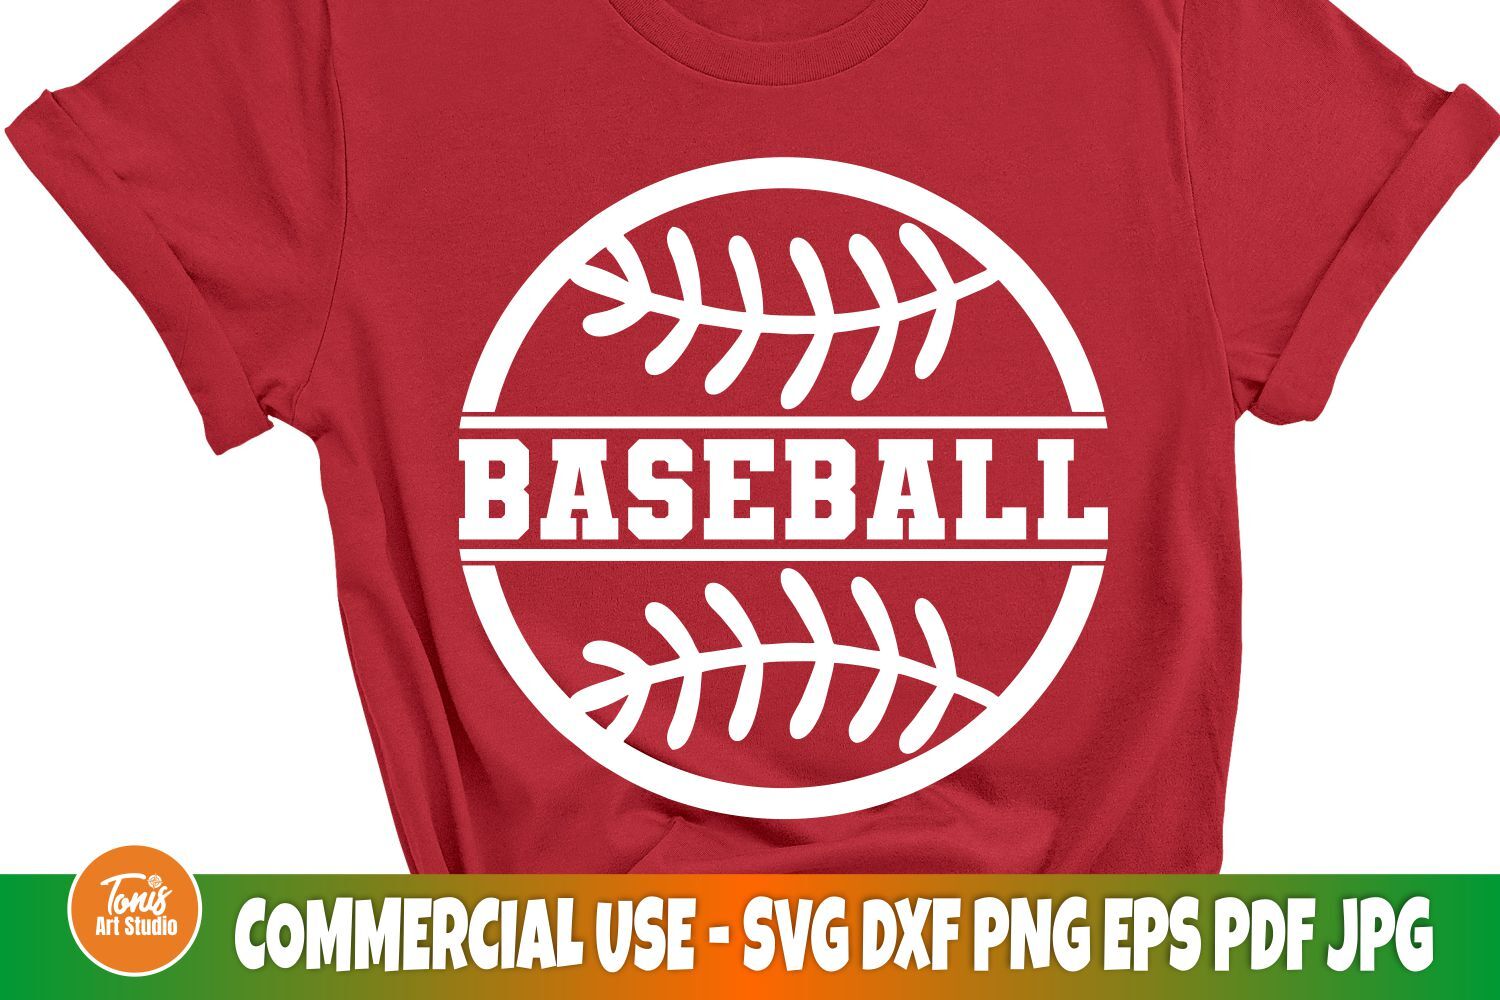 baseball t shirt ideas